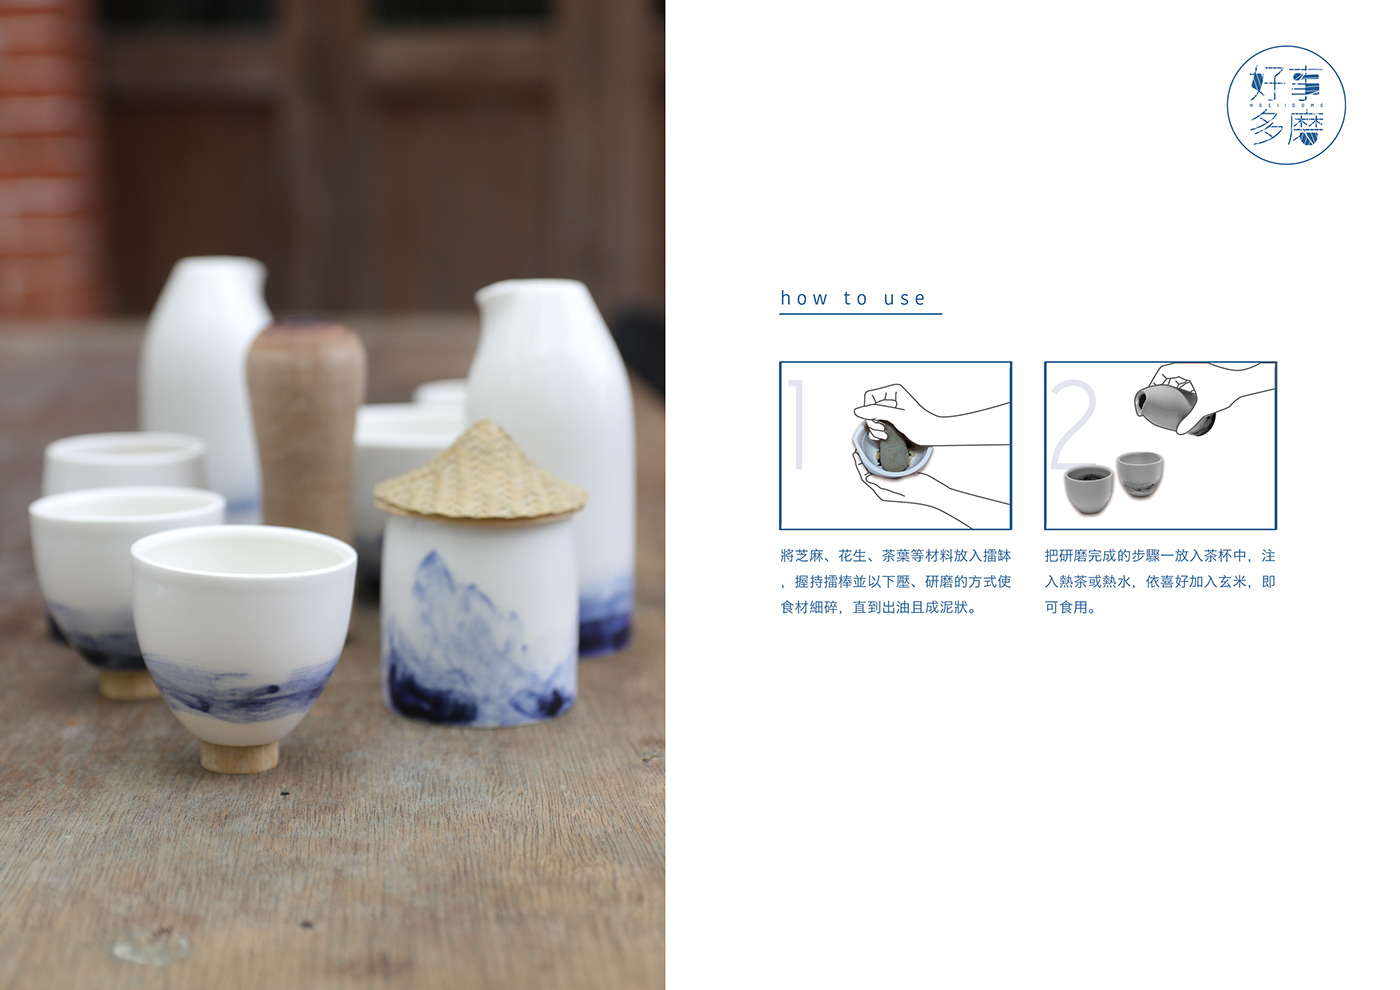 hakka teaset utensil poundedtea TaiwanDesign Pottery productdesign